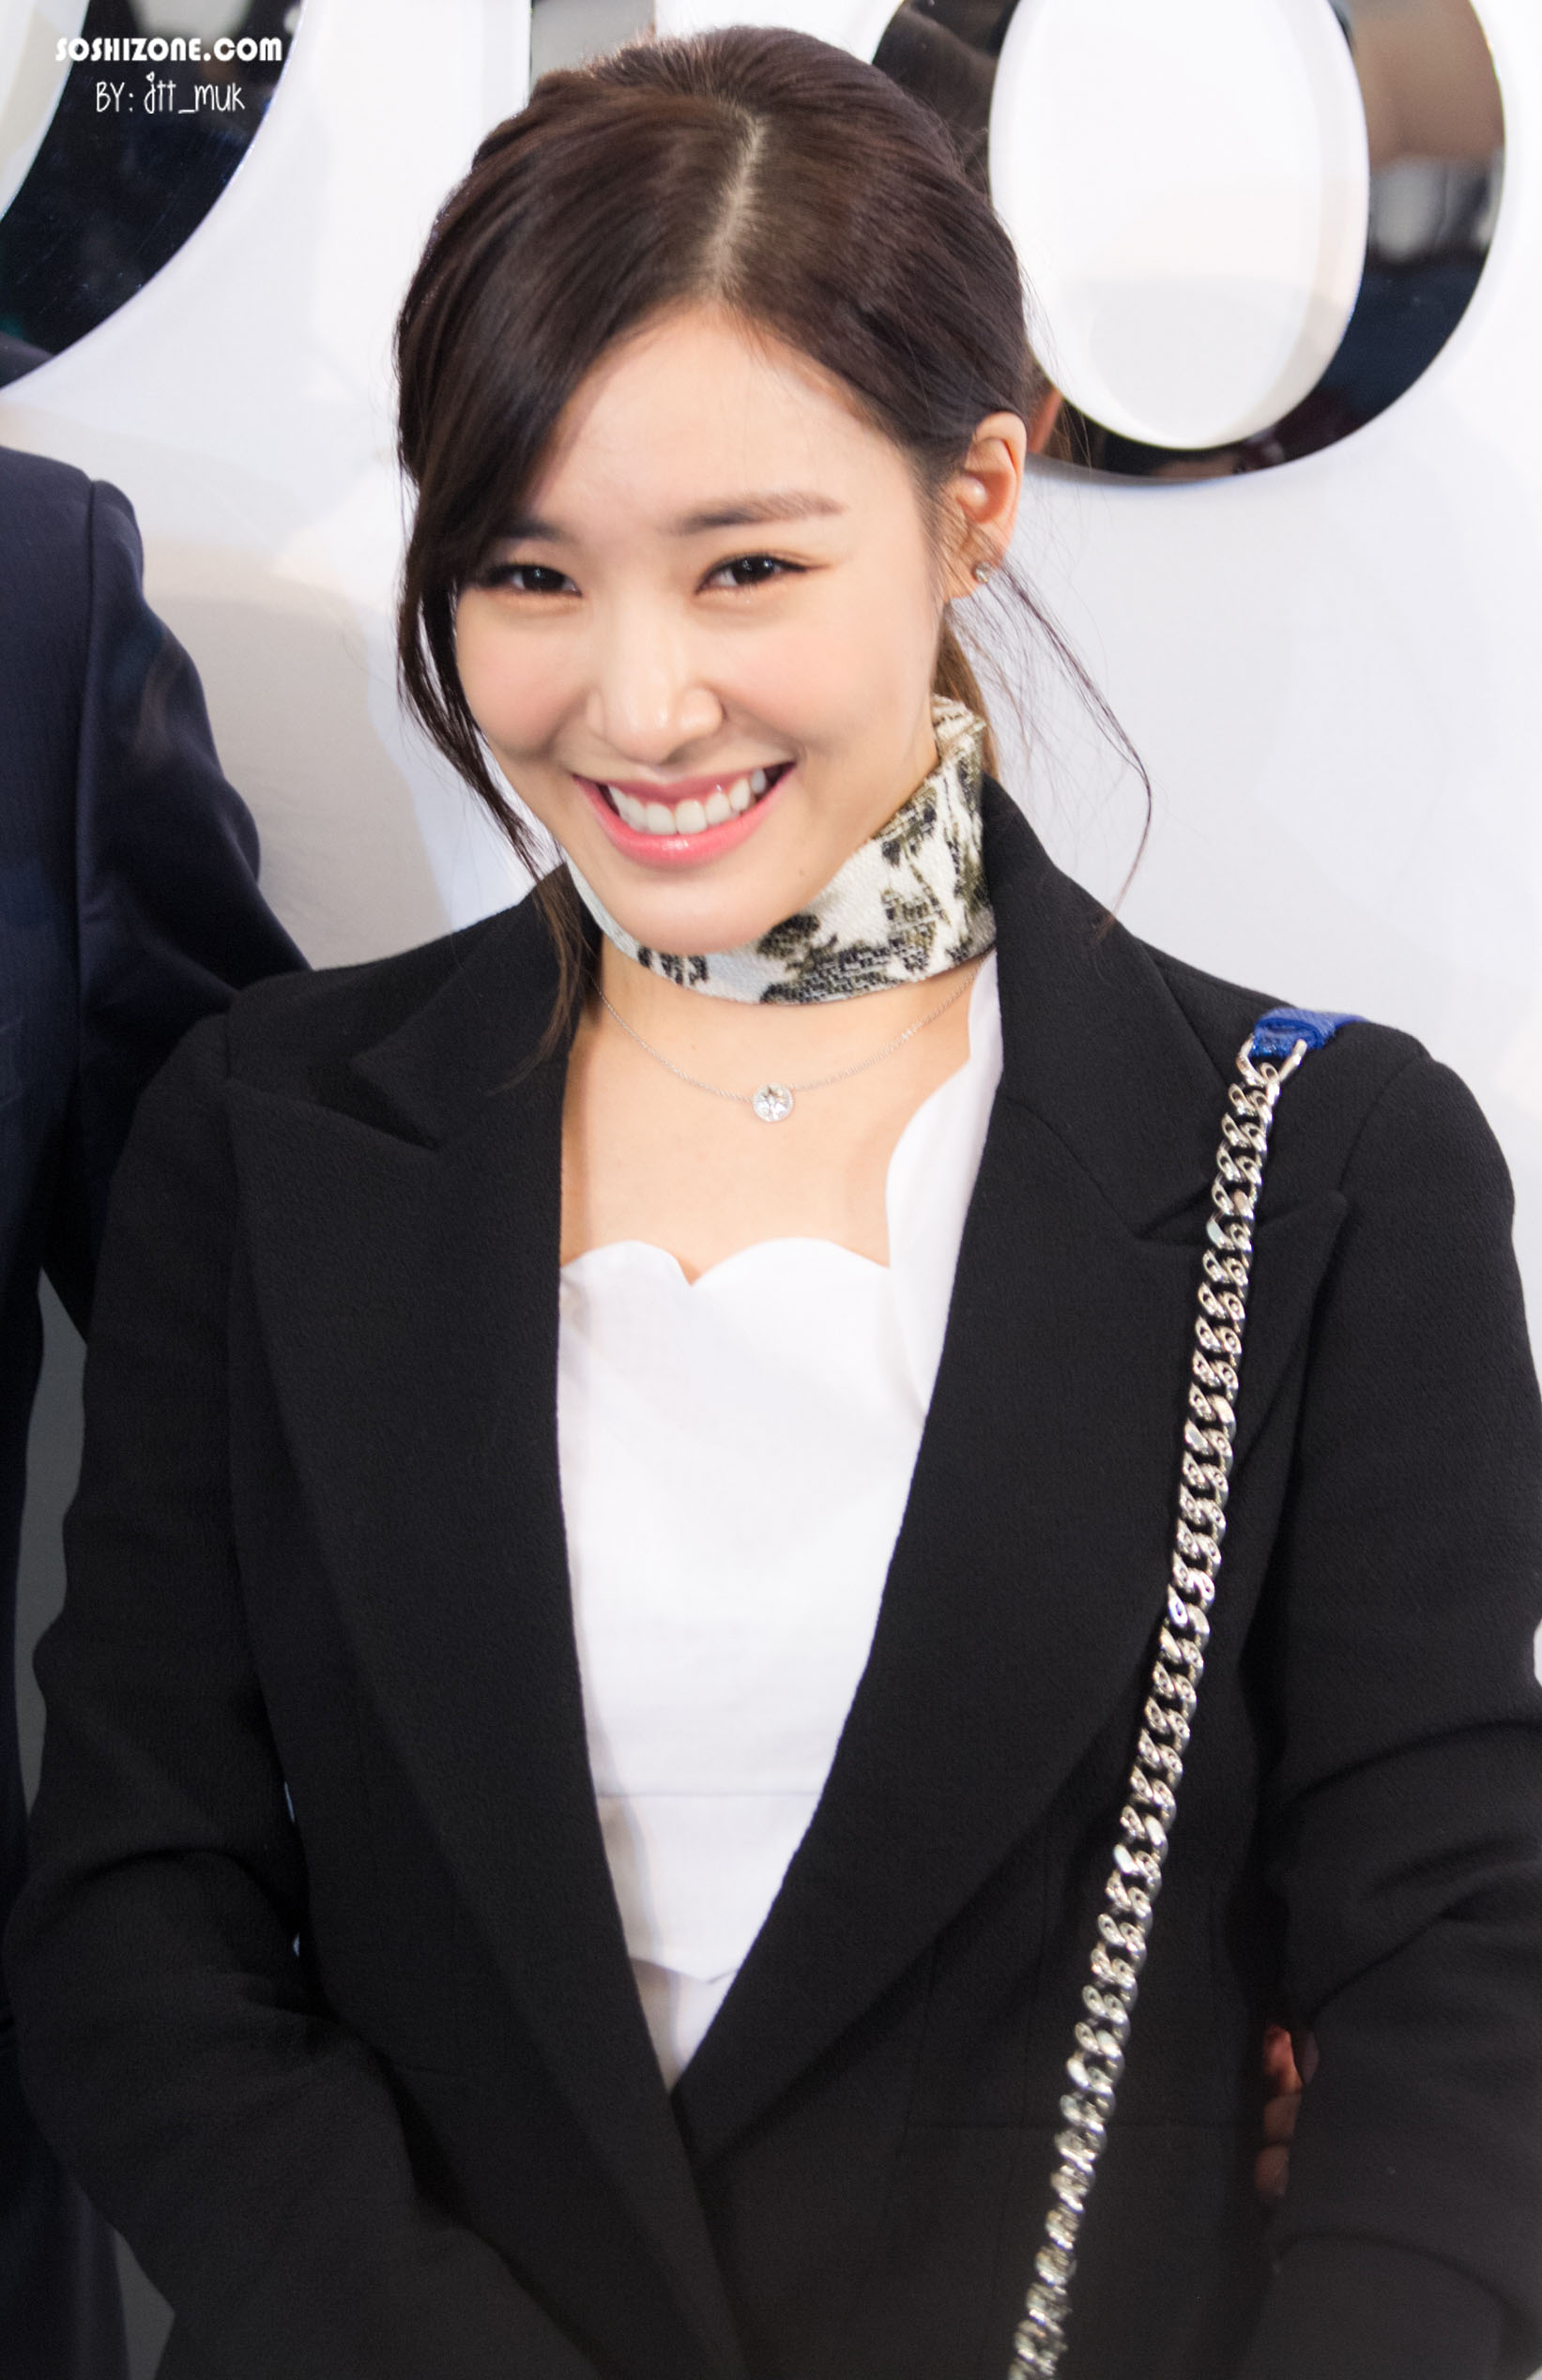 [PIC][17-02-2016]Tiffany khởi hành đi Thái Lan để tham dự sự kiện khai trương chi nhánh của thương hiệu "Christian Dior" vào hôm nay - Page 14 212AEE455728D63502EFE8